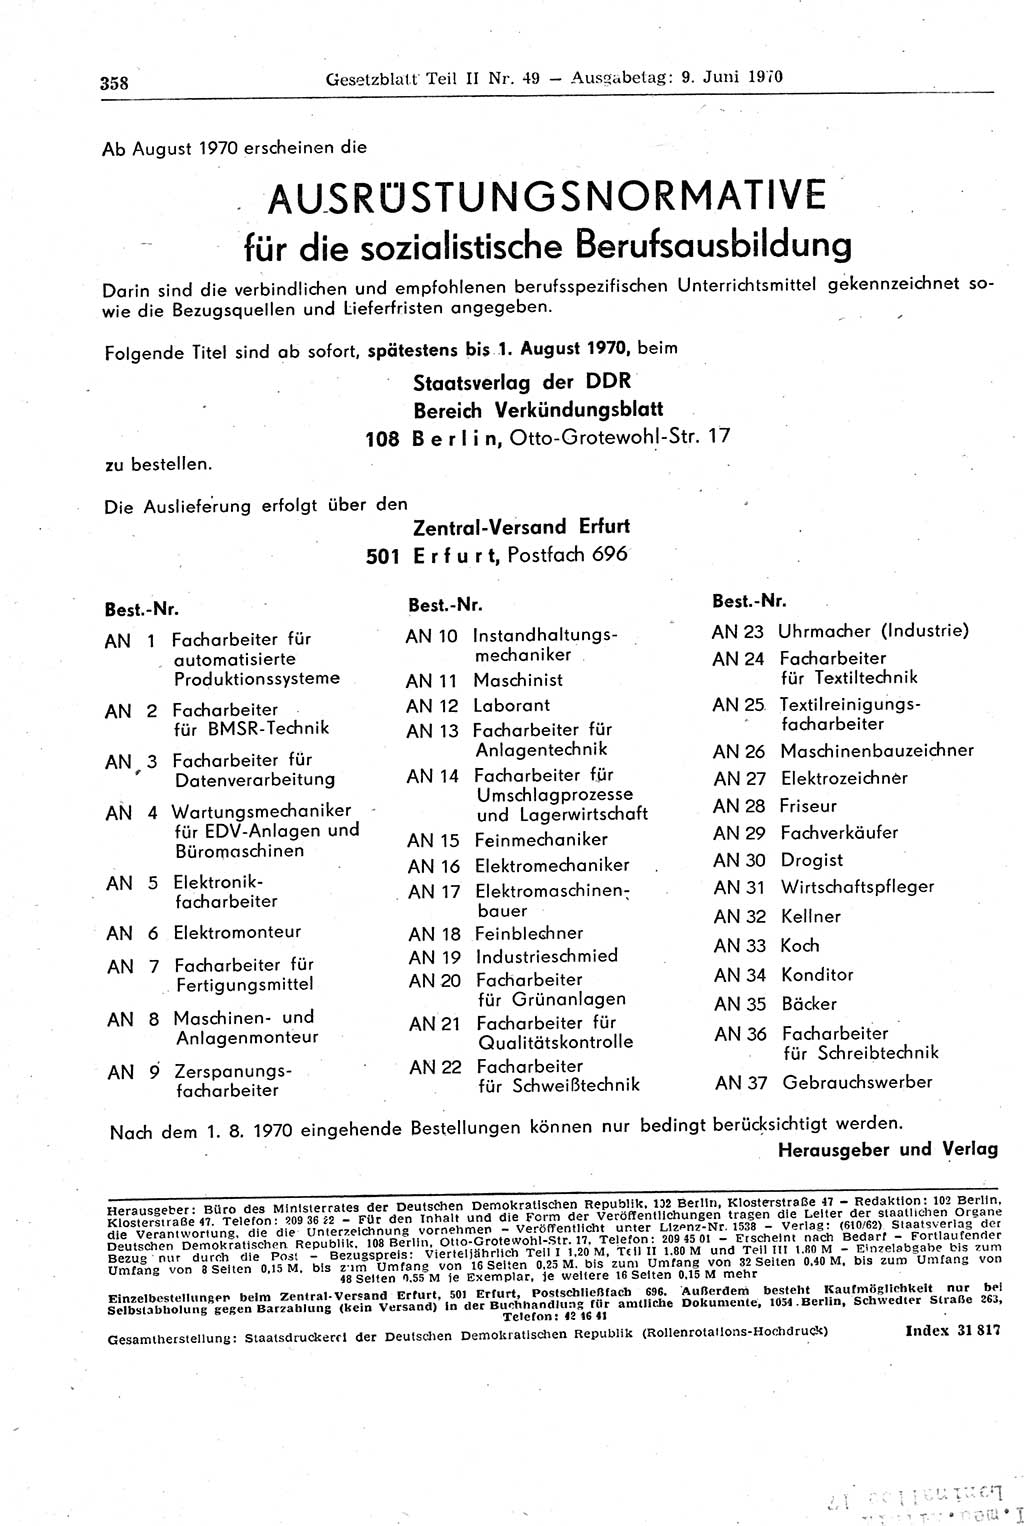 Gesetzblatt (GBl.) der Deutschen Demokratischen Republik (DDR) Teil ⅠⅠ 1970, Seite 358 (GBl. DDR ⅠⅠ 1970, S. 358)